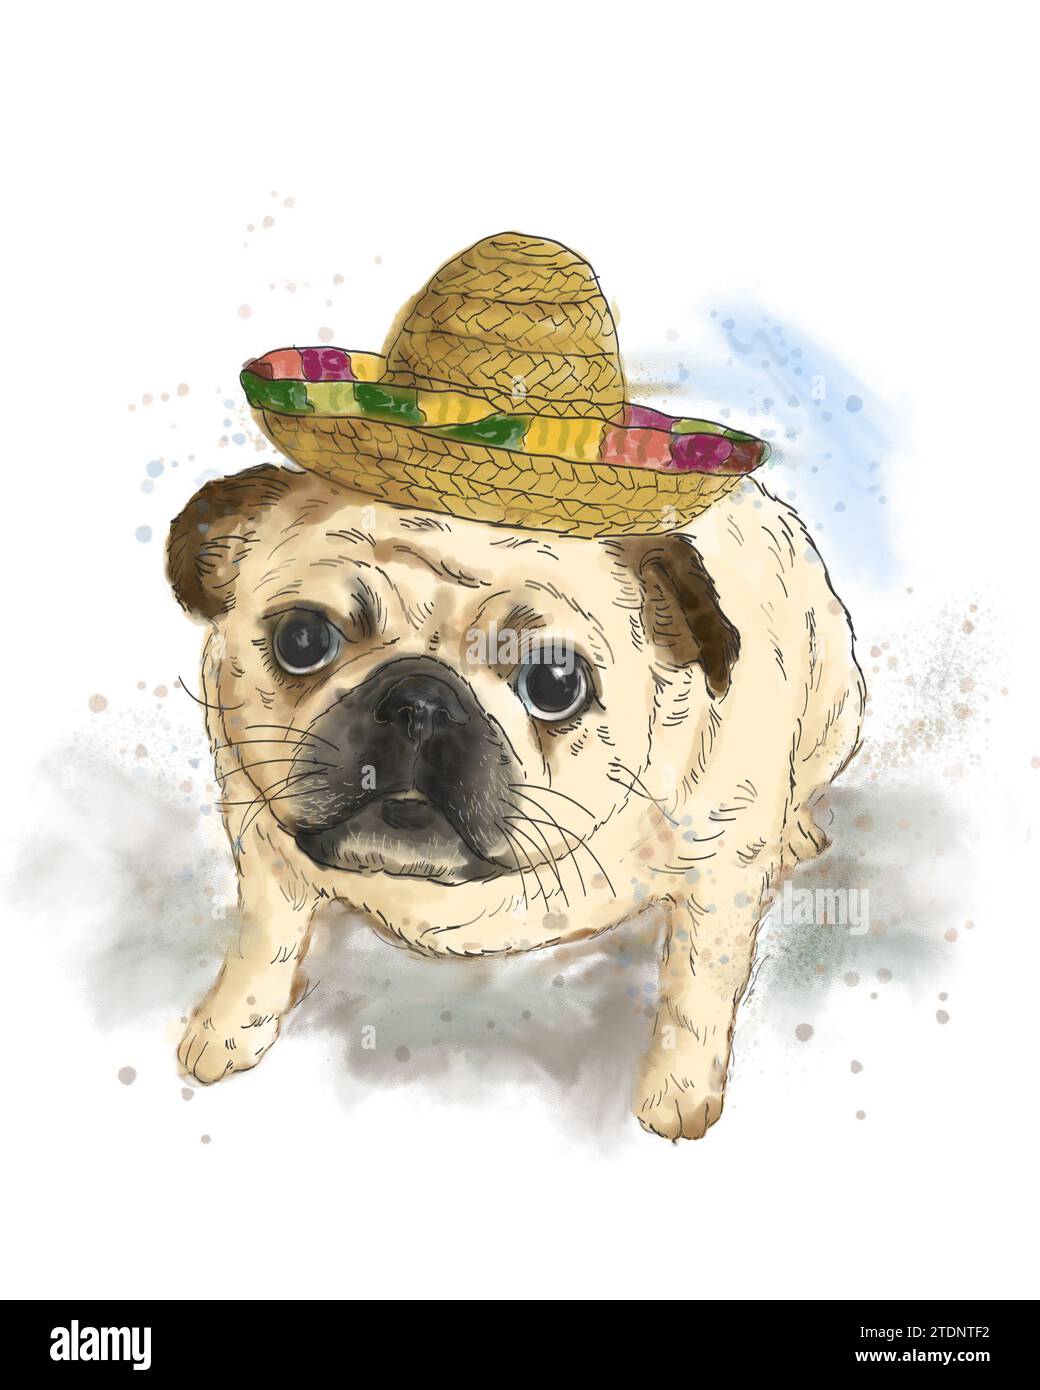 Portrait d'un mignon adorable chiot portant un chapeau mexicain. Dessin artistique à la main aquarelle colorée sur fond blanc. Concept d'animal de compagnie pour chien. Banque D'Images